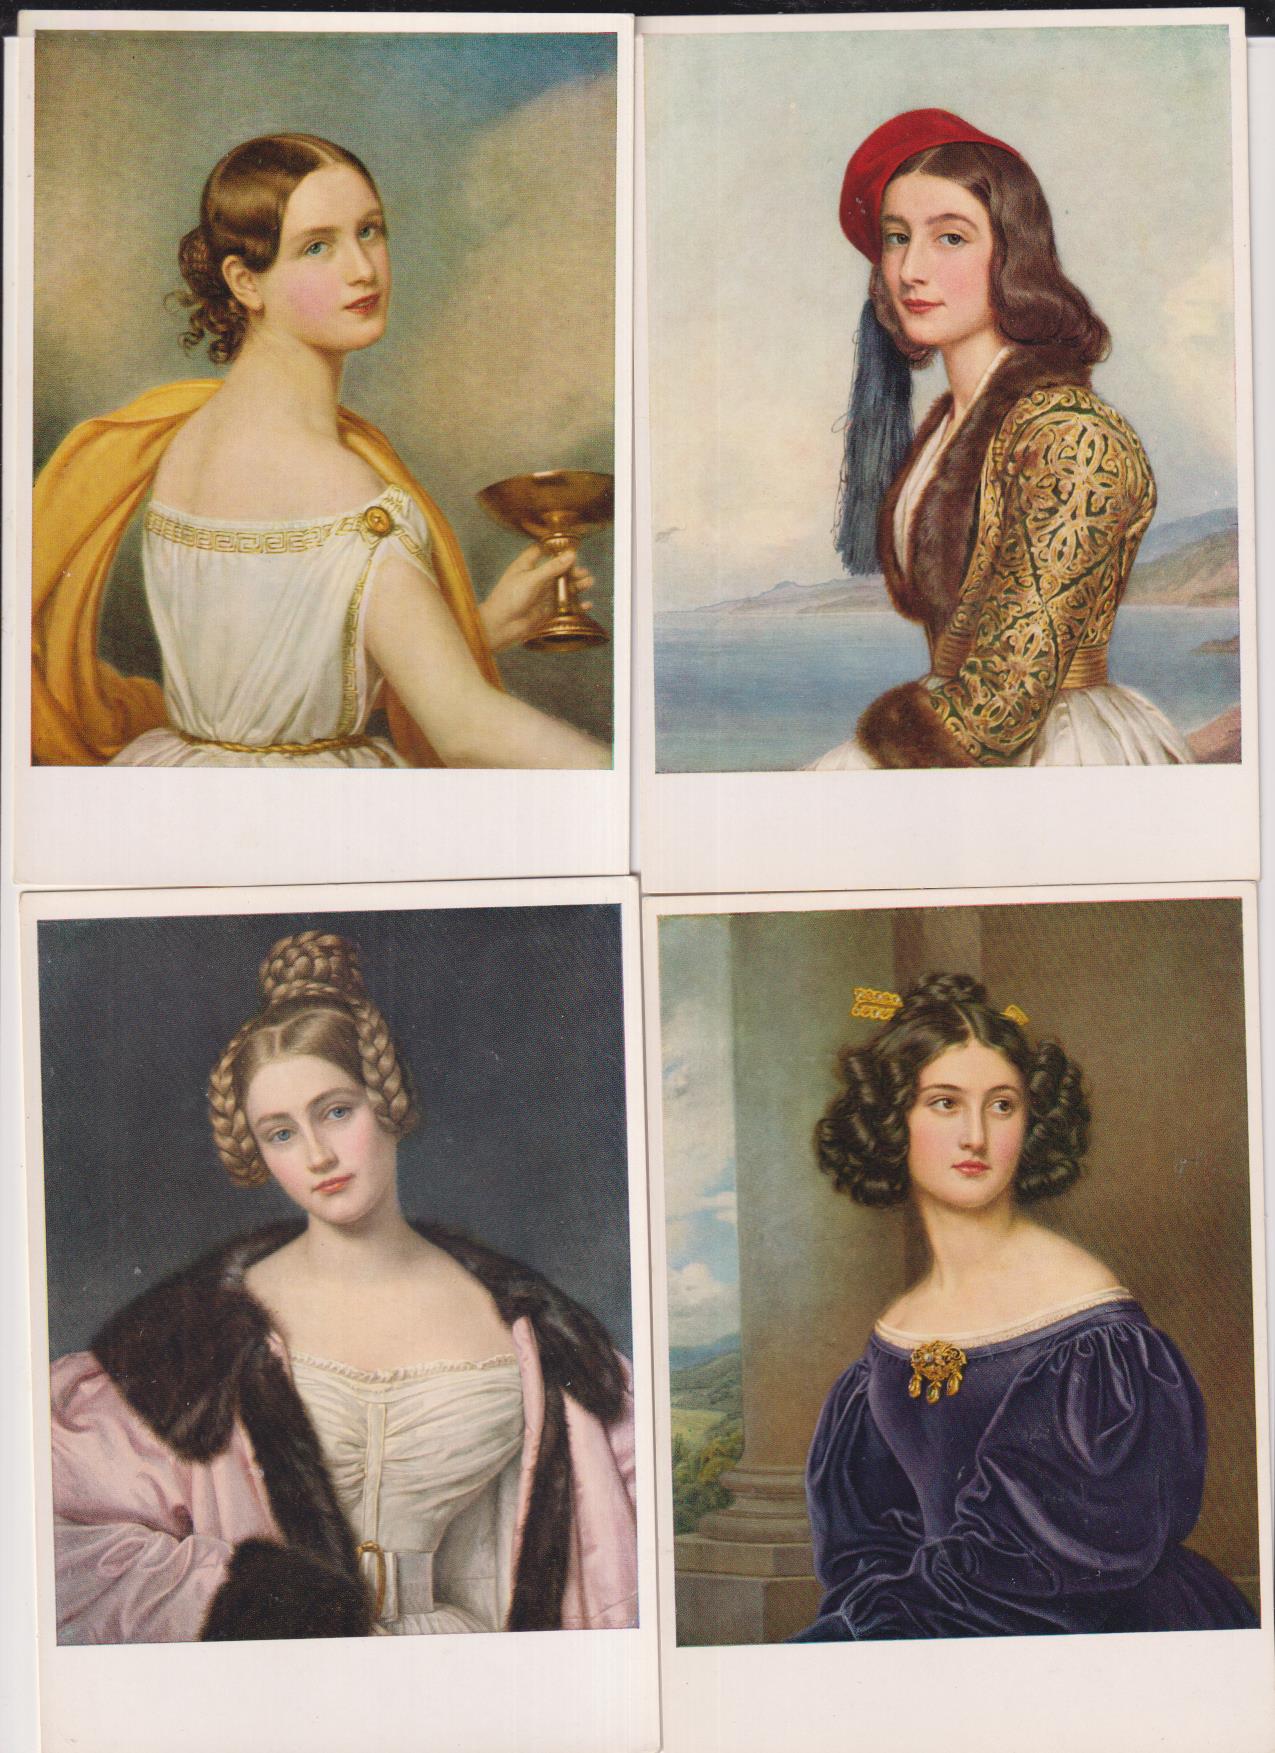 Lote de 4 Tarjetas de Retratos de Joseph Stieler. Galería de la Belleza, Rey Ludwig I. Munich